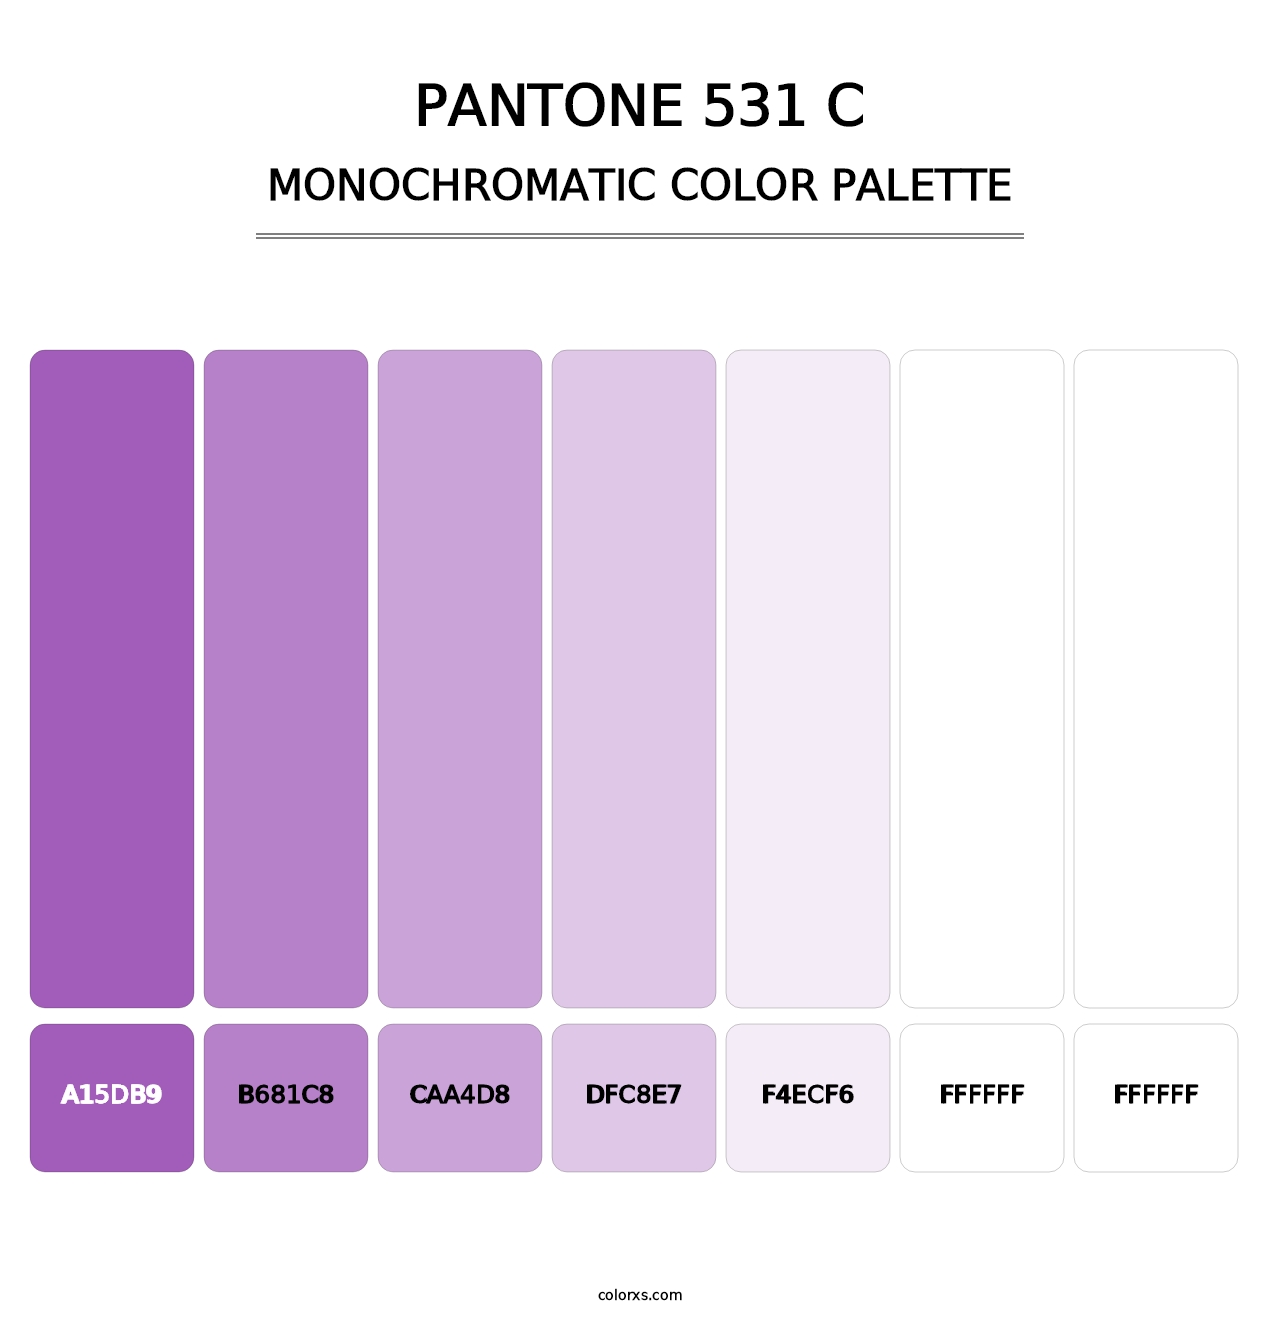 PANTONE 531 C - Monochromatic Color Palette